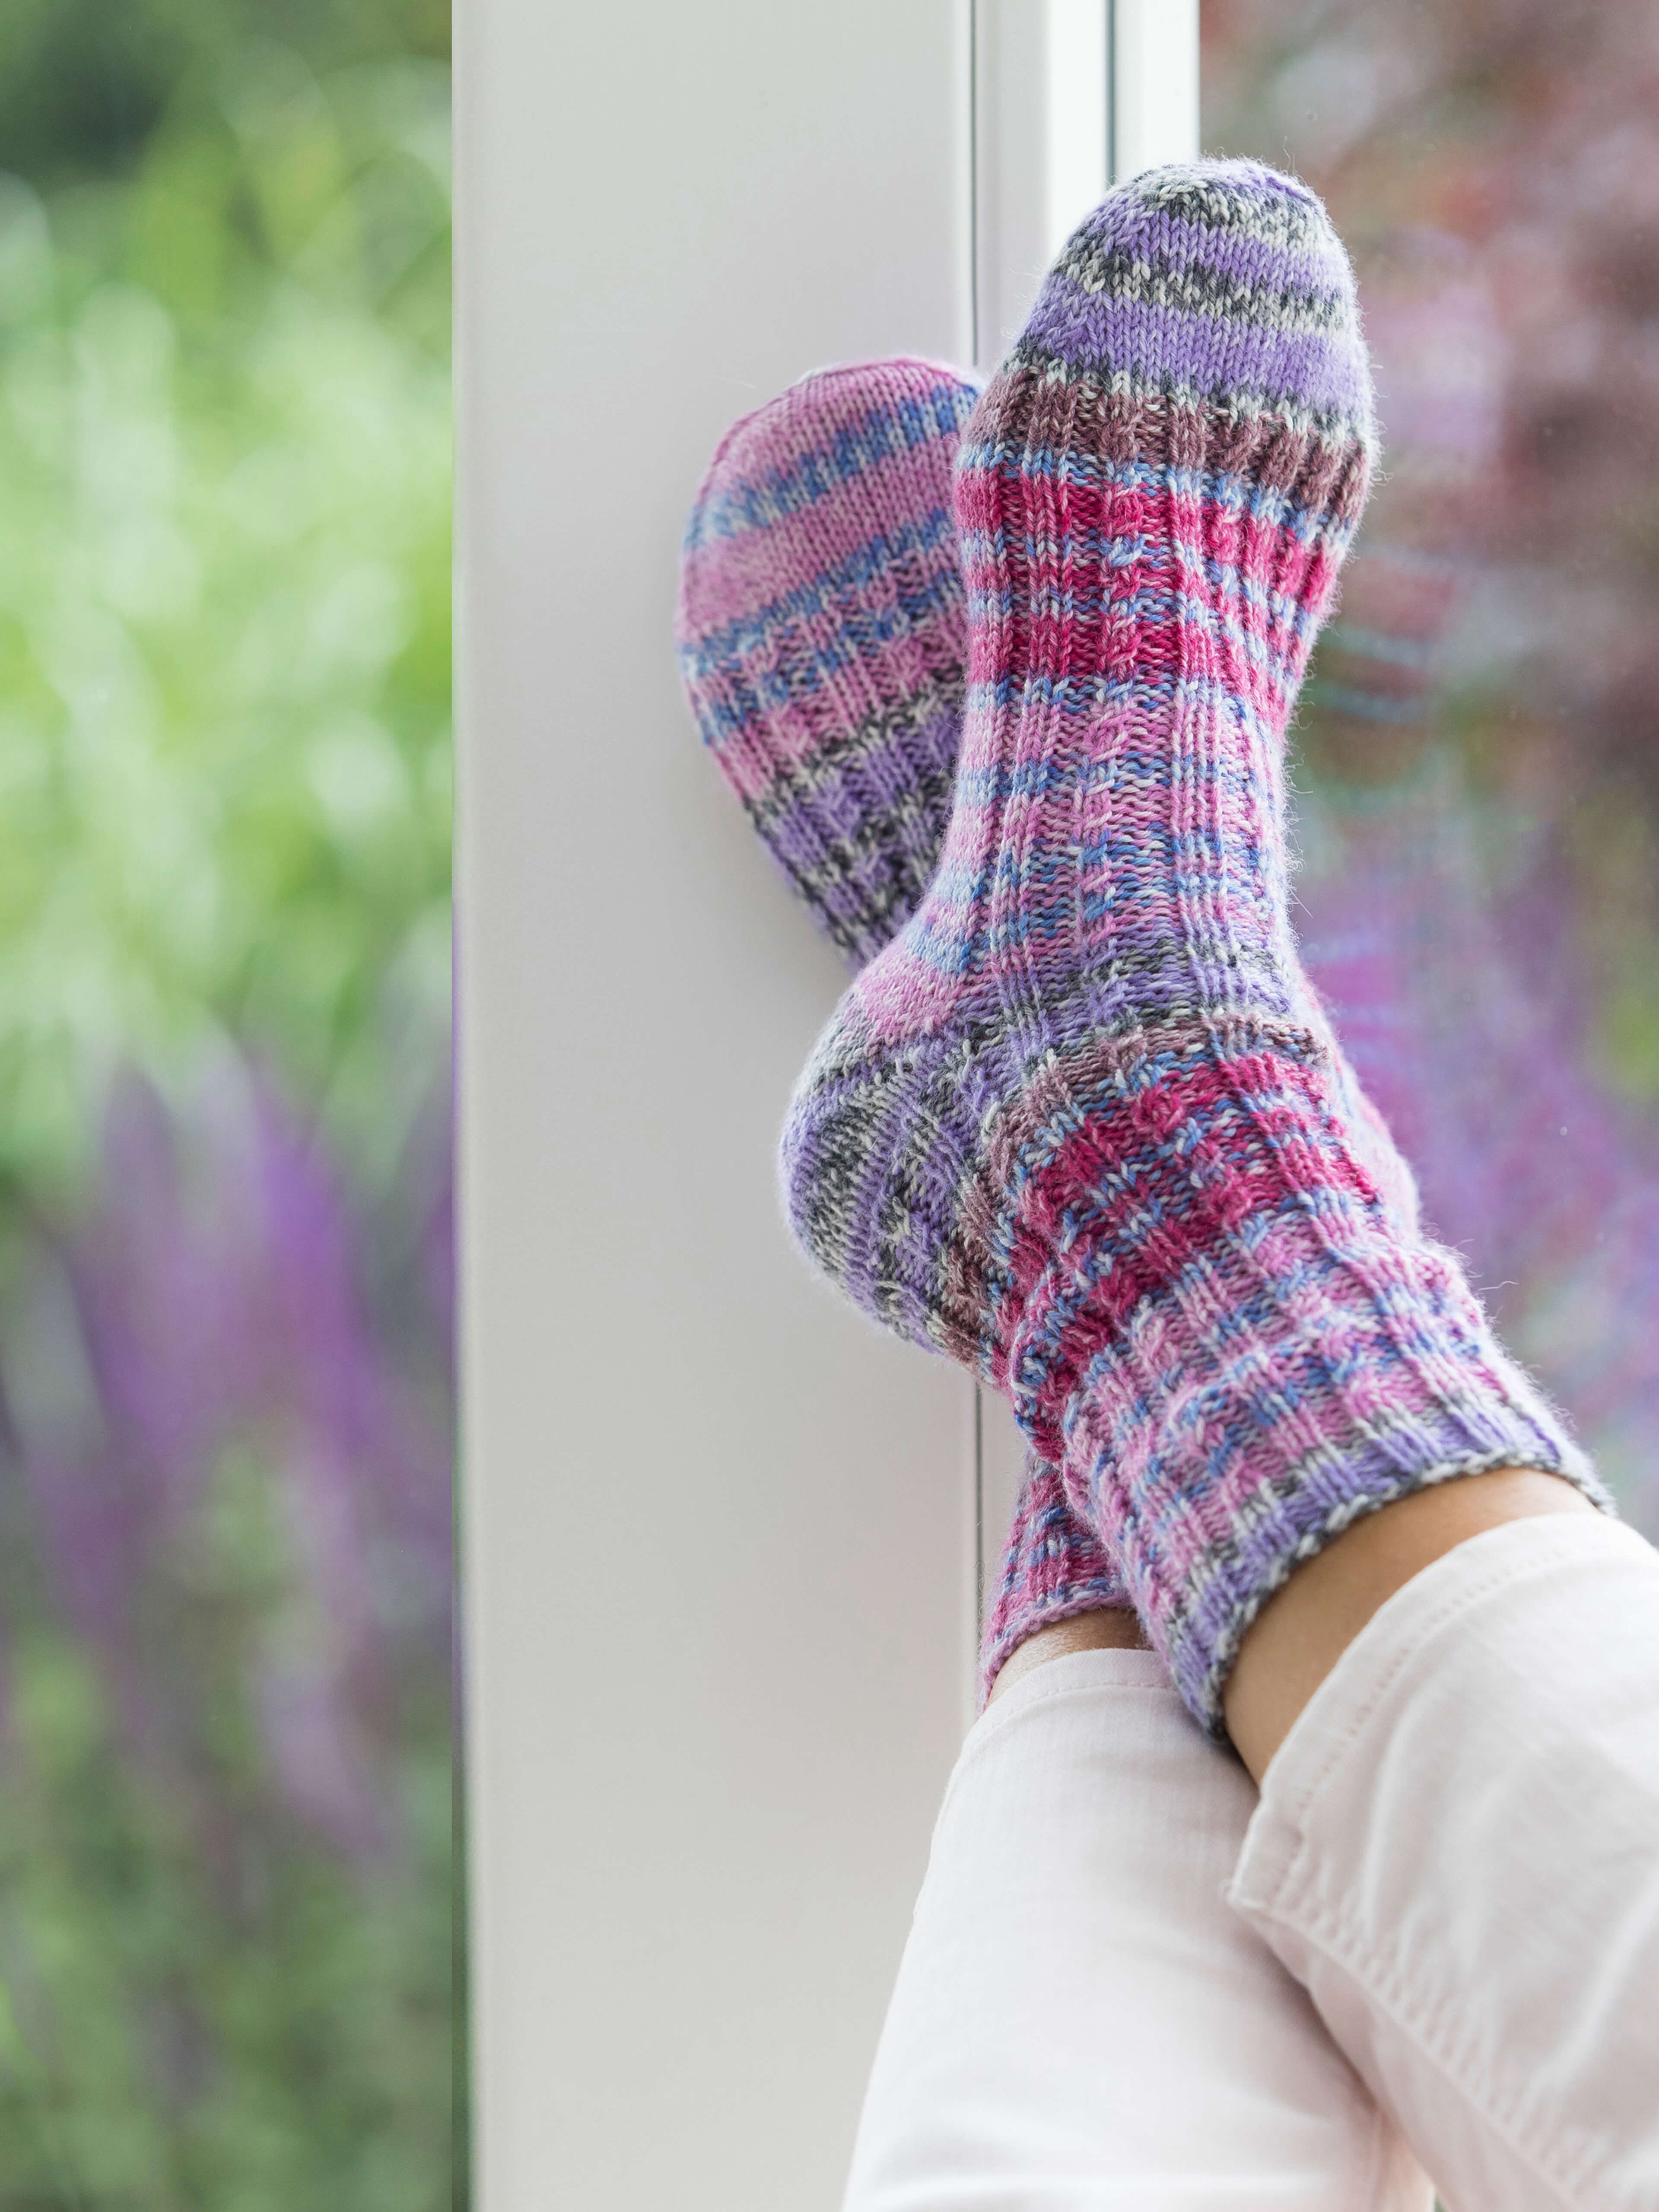 Gestrickte Socken aus Hot Socks Pearl color Wolle von Gründl